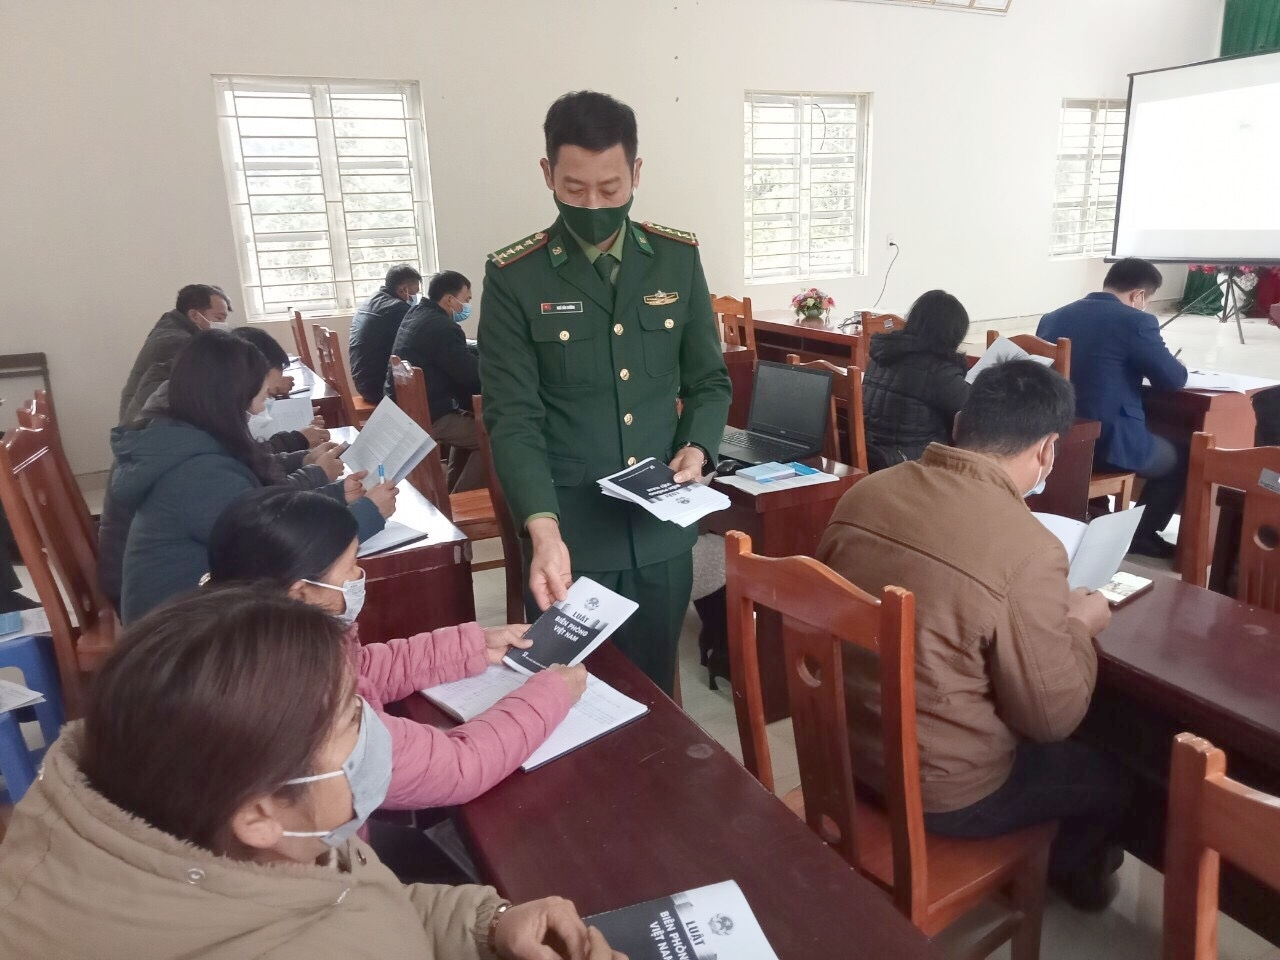 Cán bộ, chiến sĩ Đồn Biên phòng Na Hình (huyện Văn Lãng, Lạng Sơn) phát tờ rơi tuyên truyền phổ biến pháp luật cho Nhân dân khu vực biên giới.